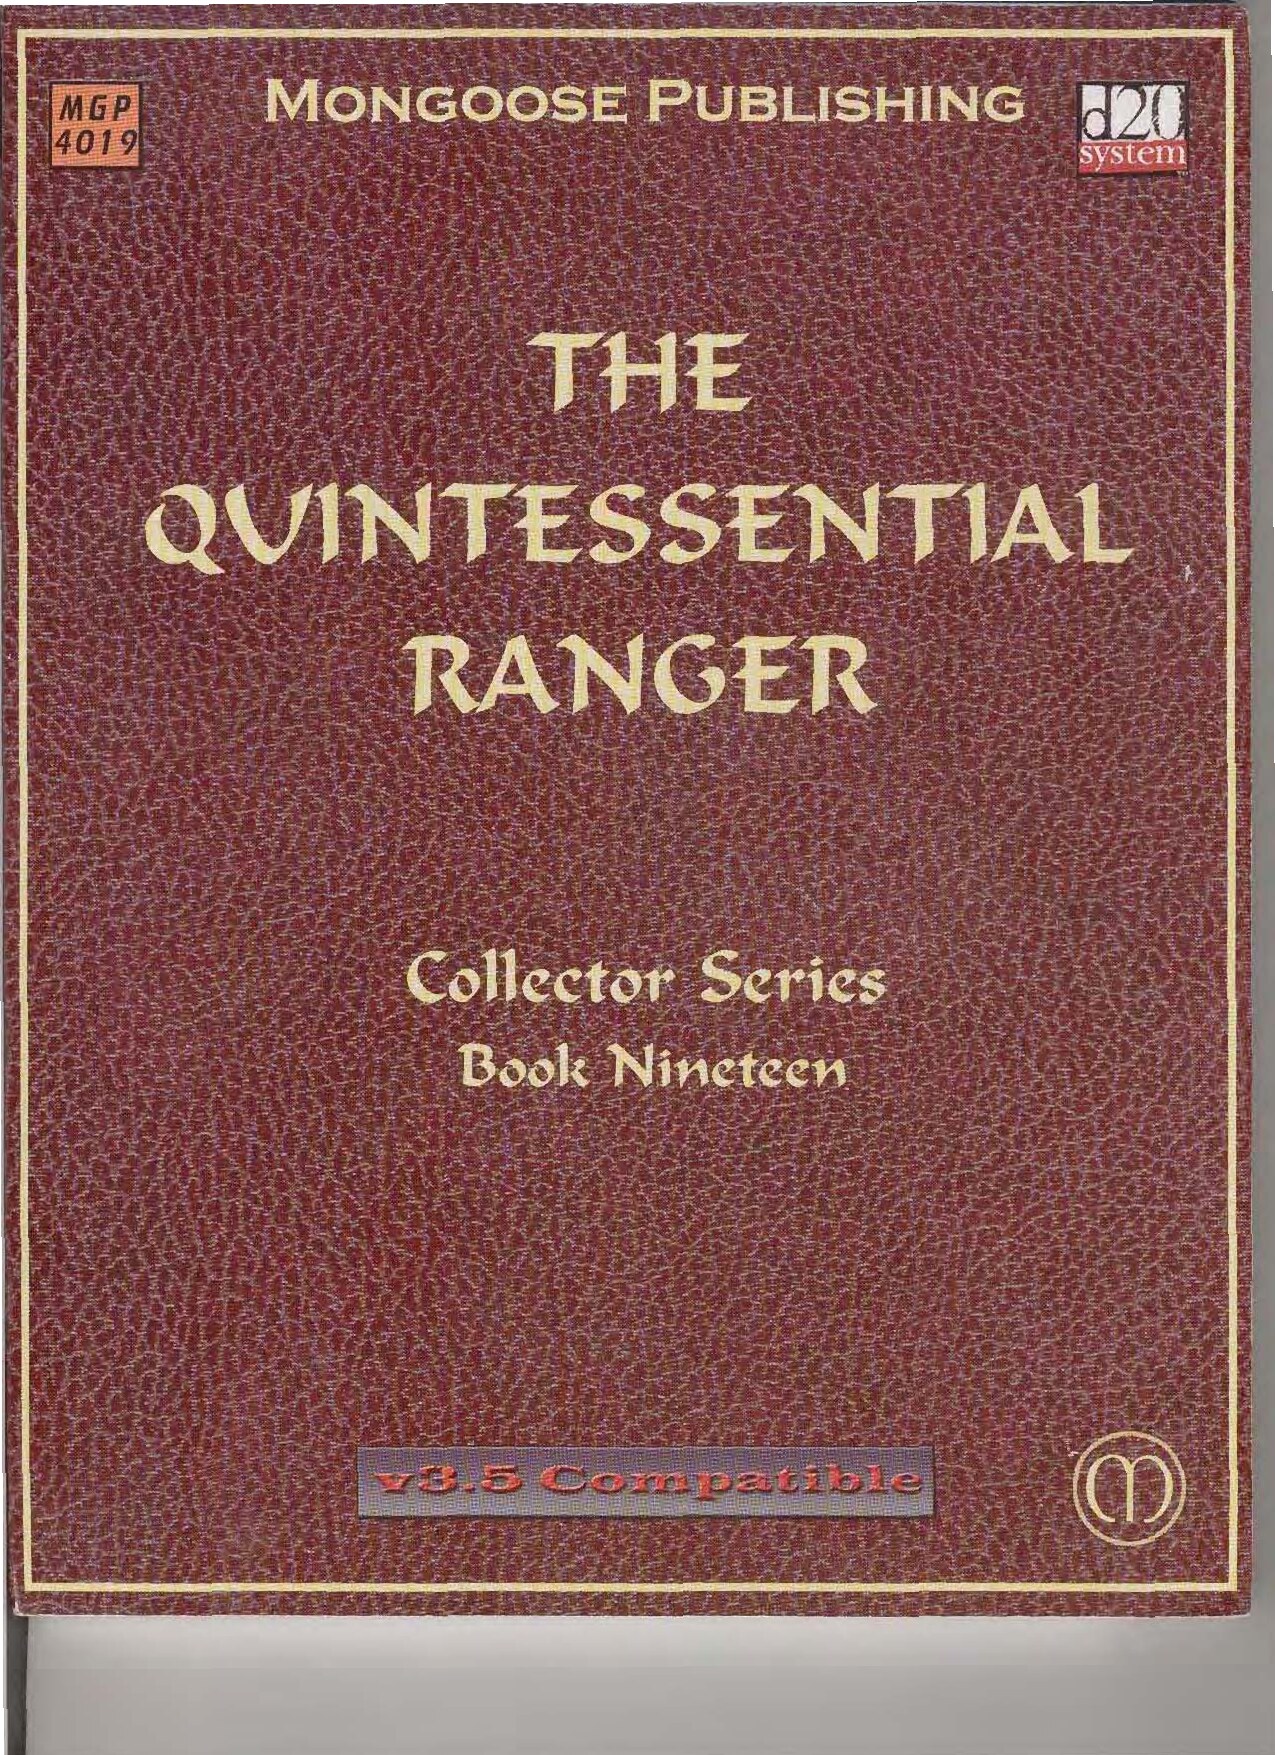 The Quintessential Ranger